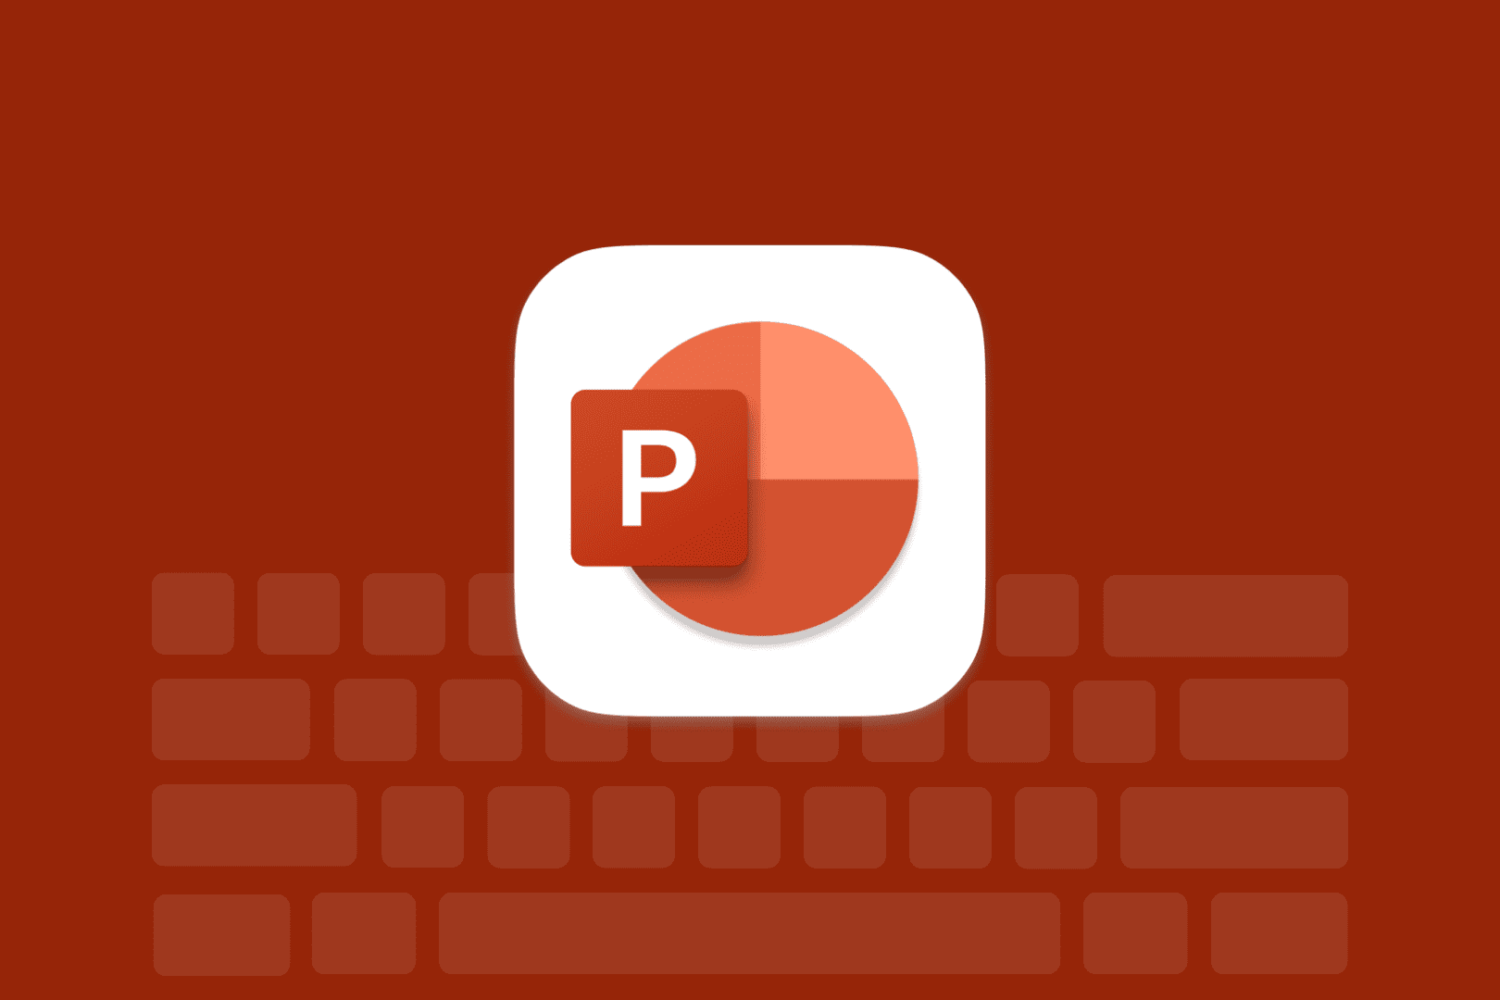 Microsoft Powerpoint logo on a dark brown background